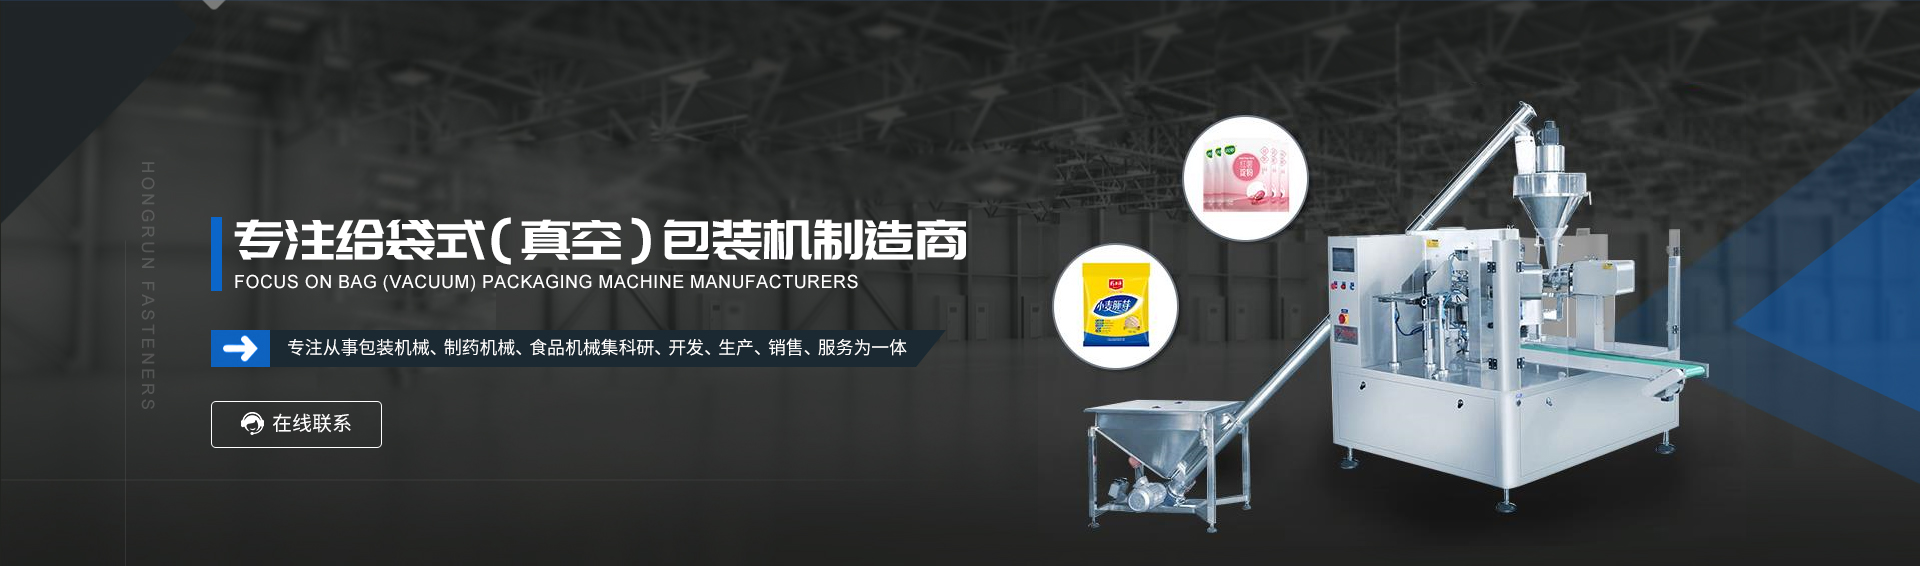 粉末包装机-粉剂包装机-深圳鼎汇3给袋式包装机厂家